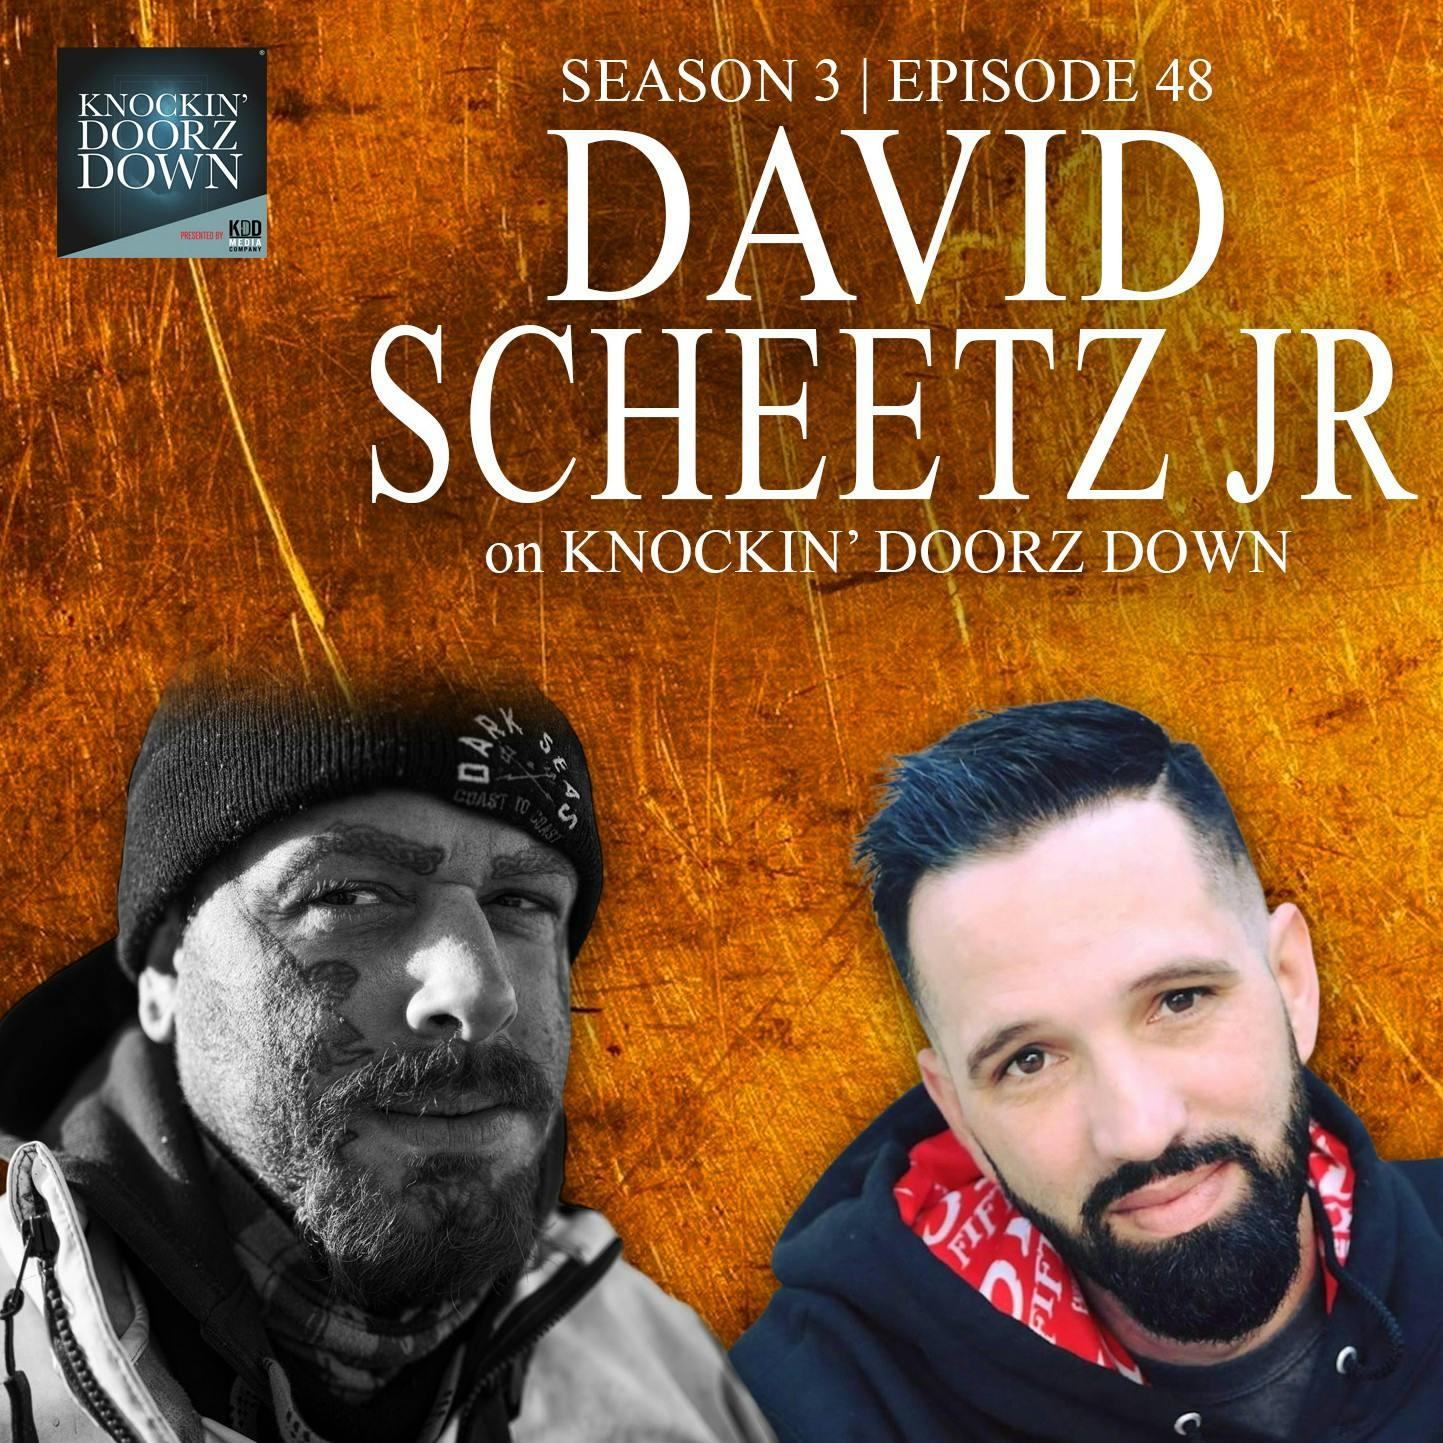 David Scheetz Jr | The Deadliest Catch, Untold Childhood Trauma, Addiction To Redemption & Faith